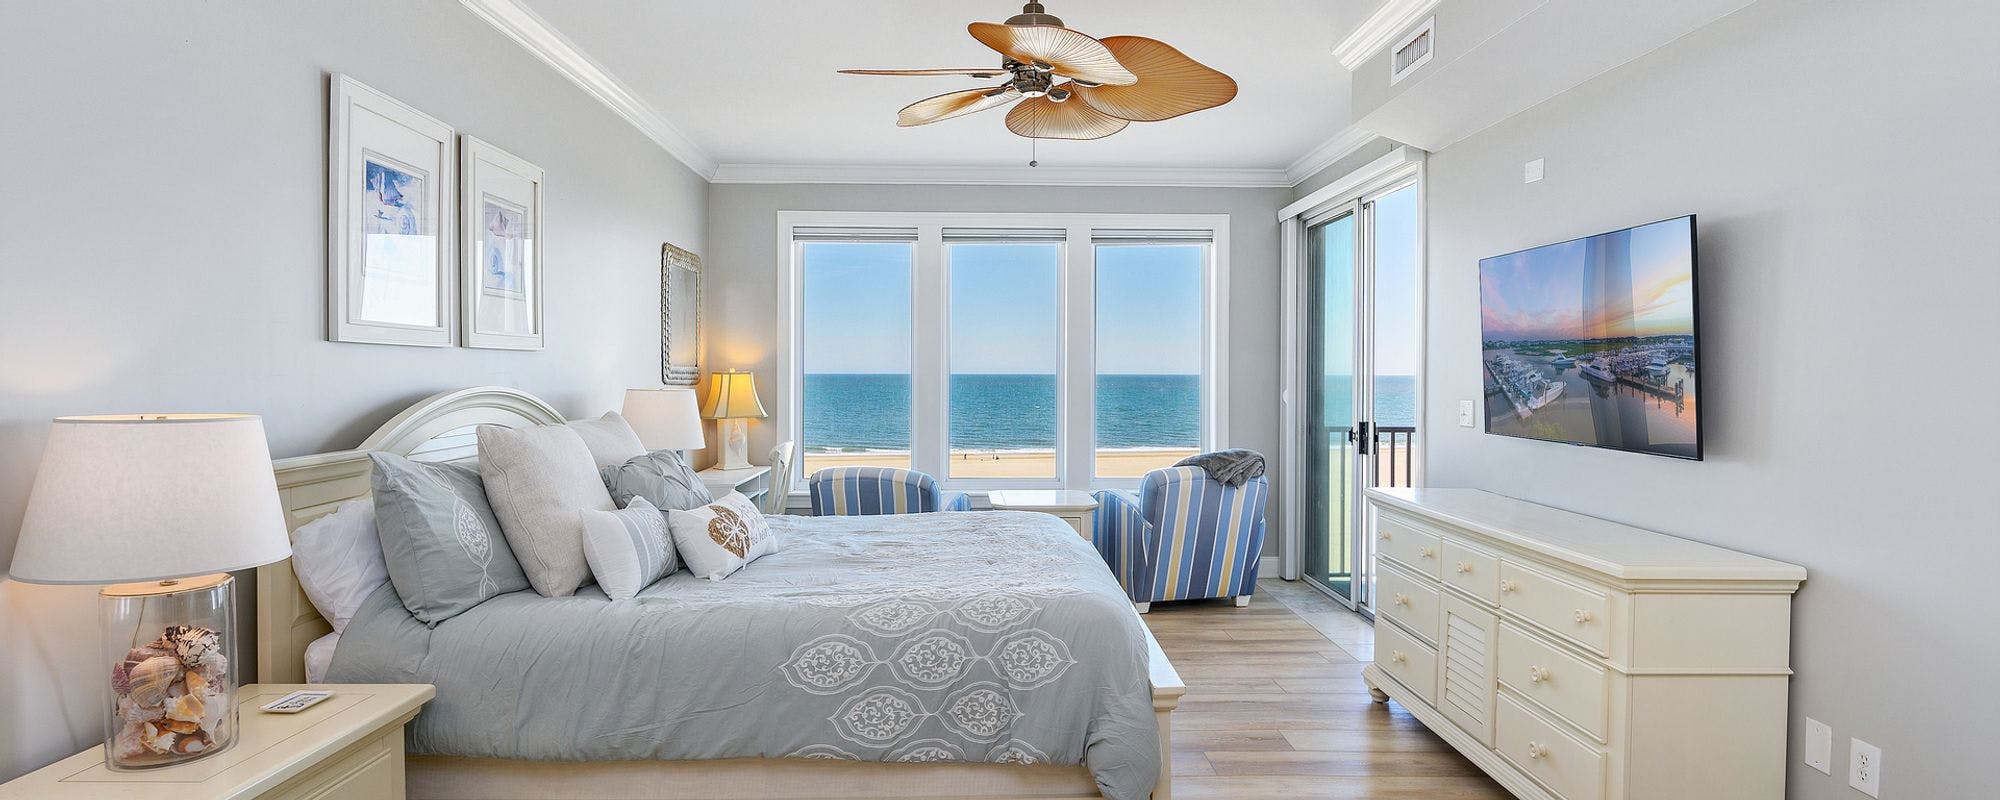 Oceanfront bedroom in Ocean City vacation rental